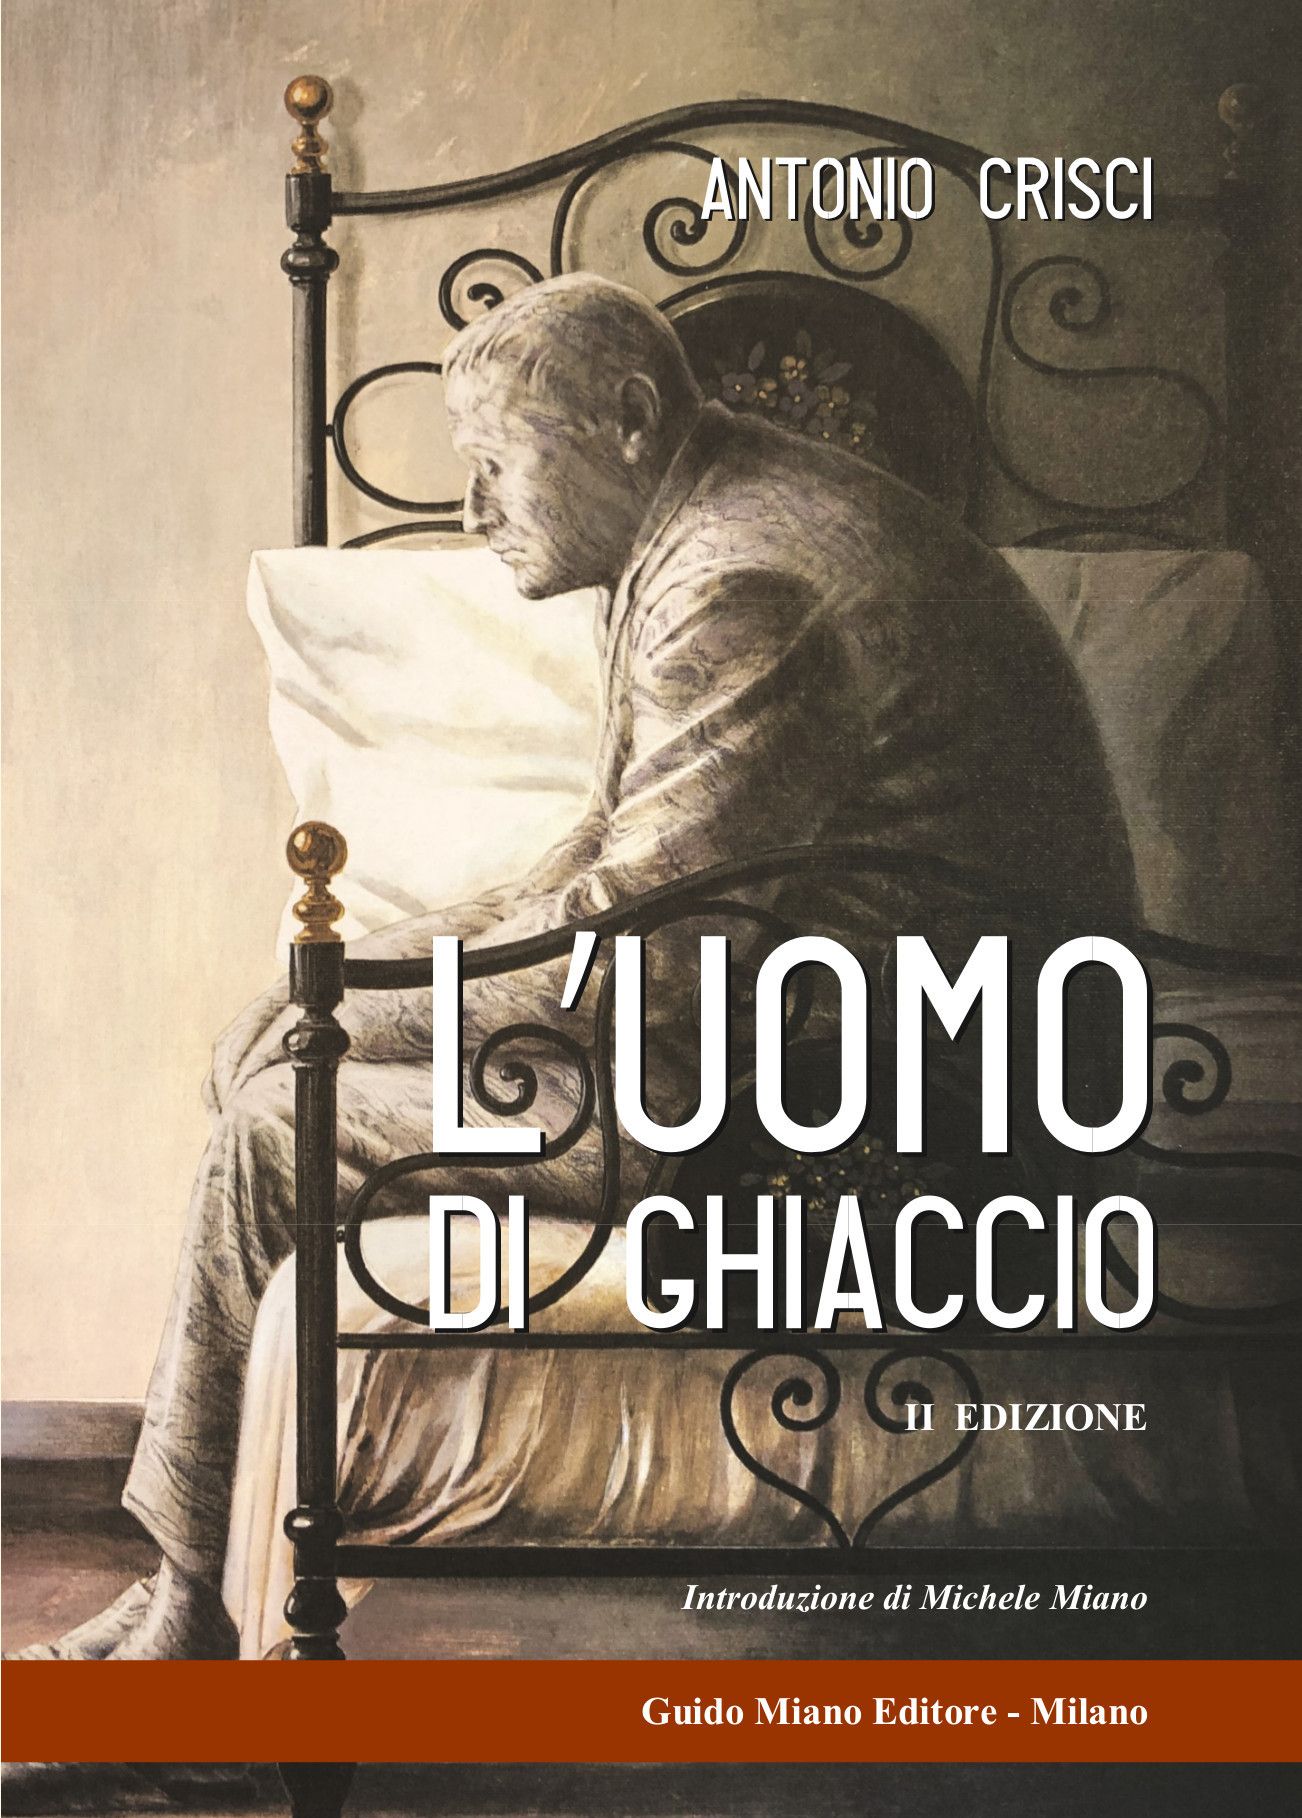 L’UOMO DI GHIACCIO di ANTONIO CRISCI
II^ edizione